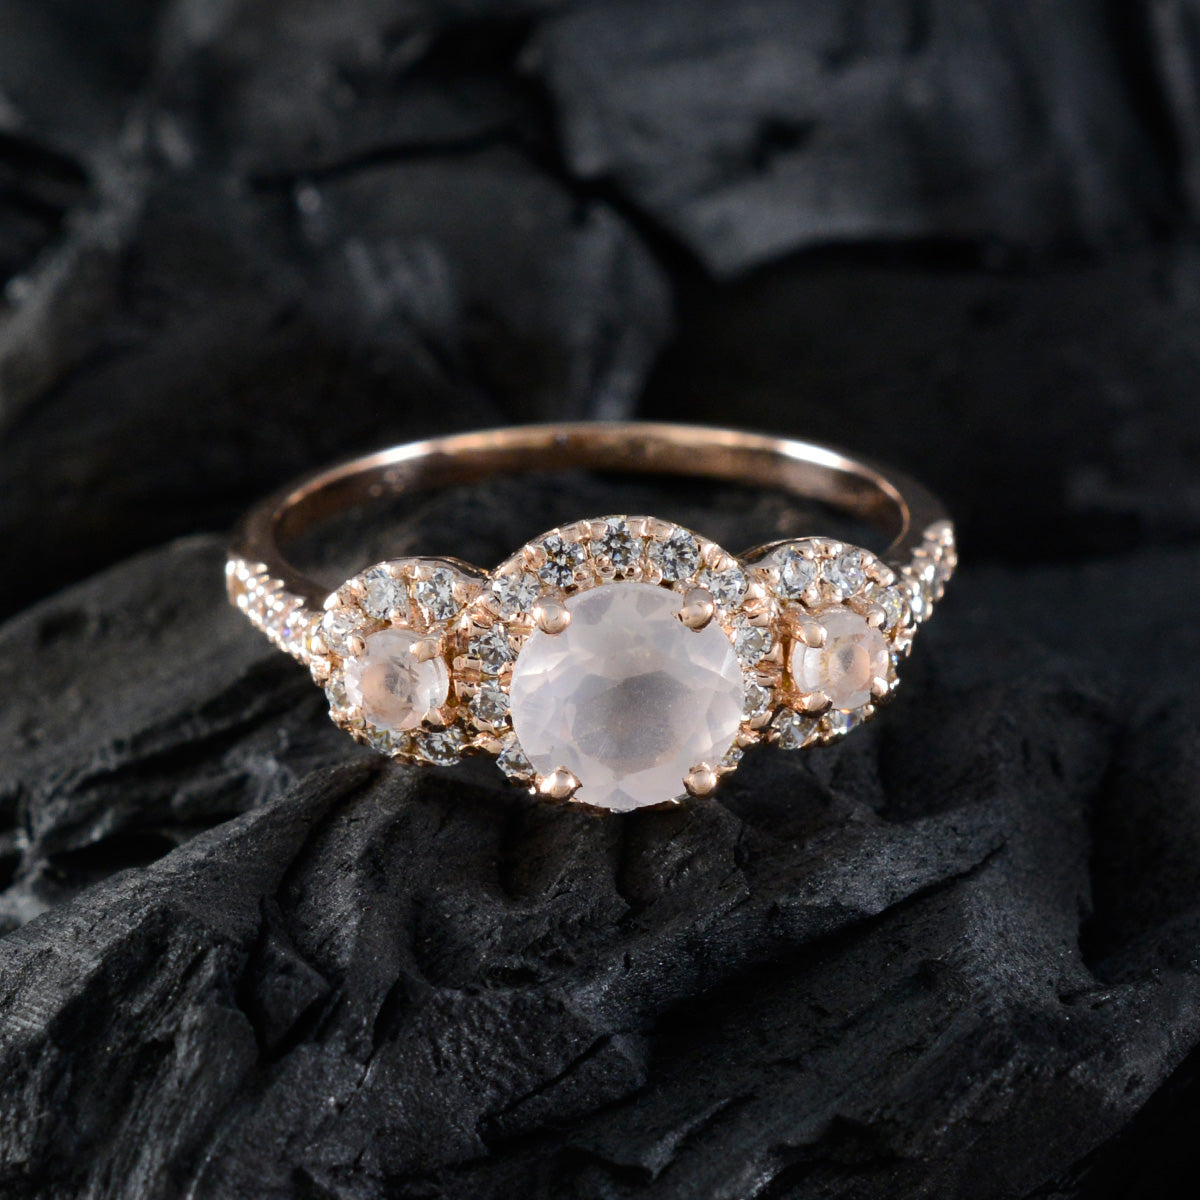 Joyería riyo, anillo de plata con chapado en oro rosa, piedra de cuarzo rosa, ajuste de punta redonda, joyería de diseño, anillo de Año Nuevo